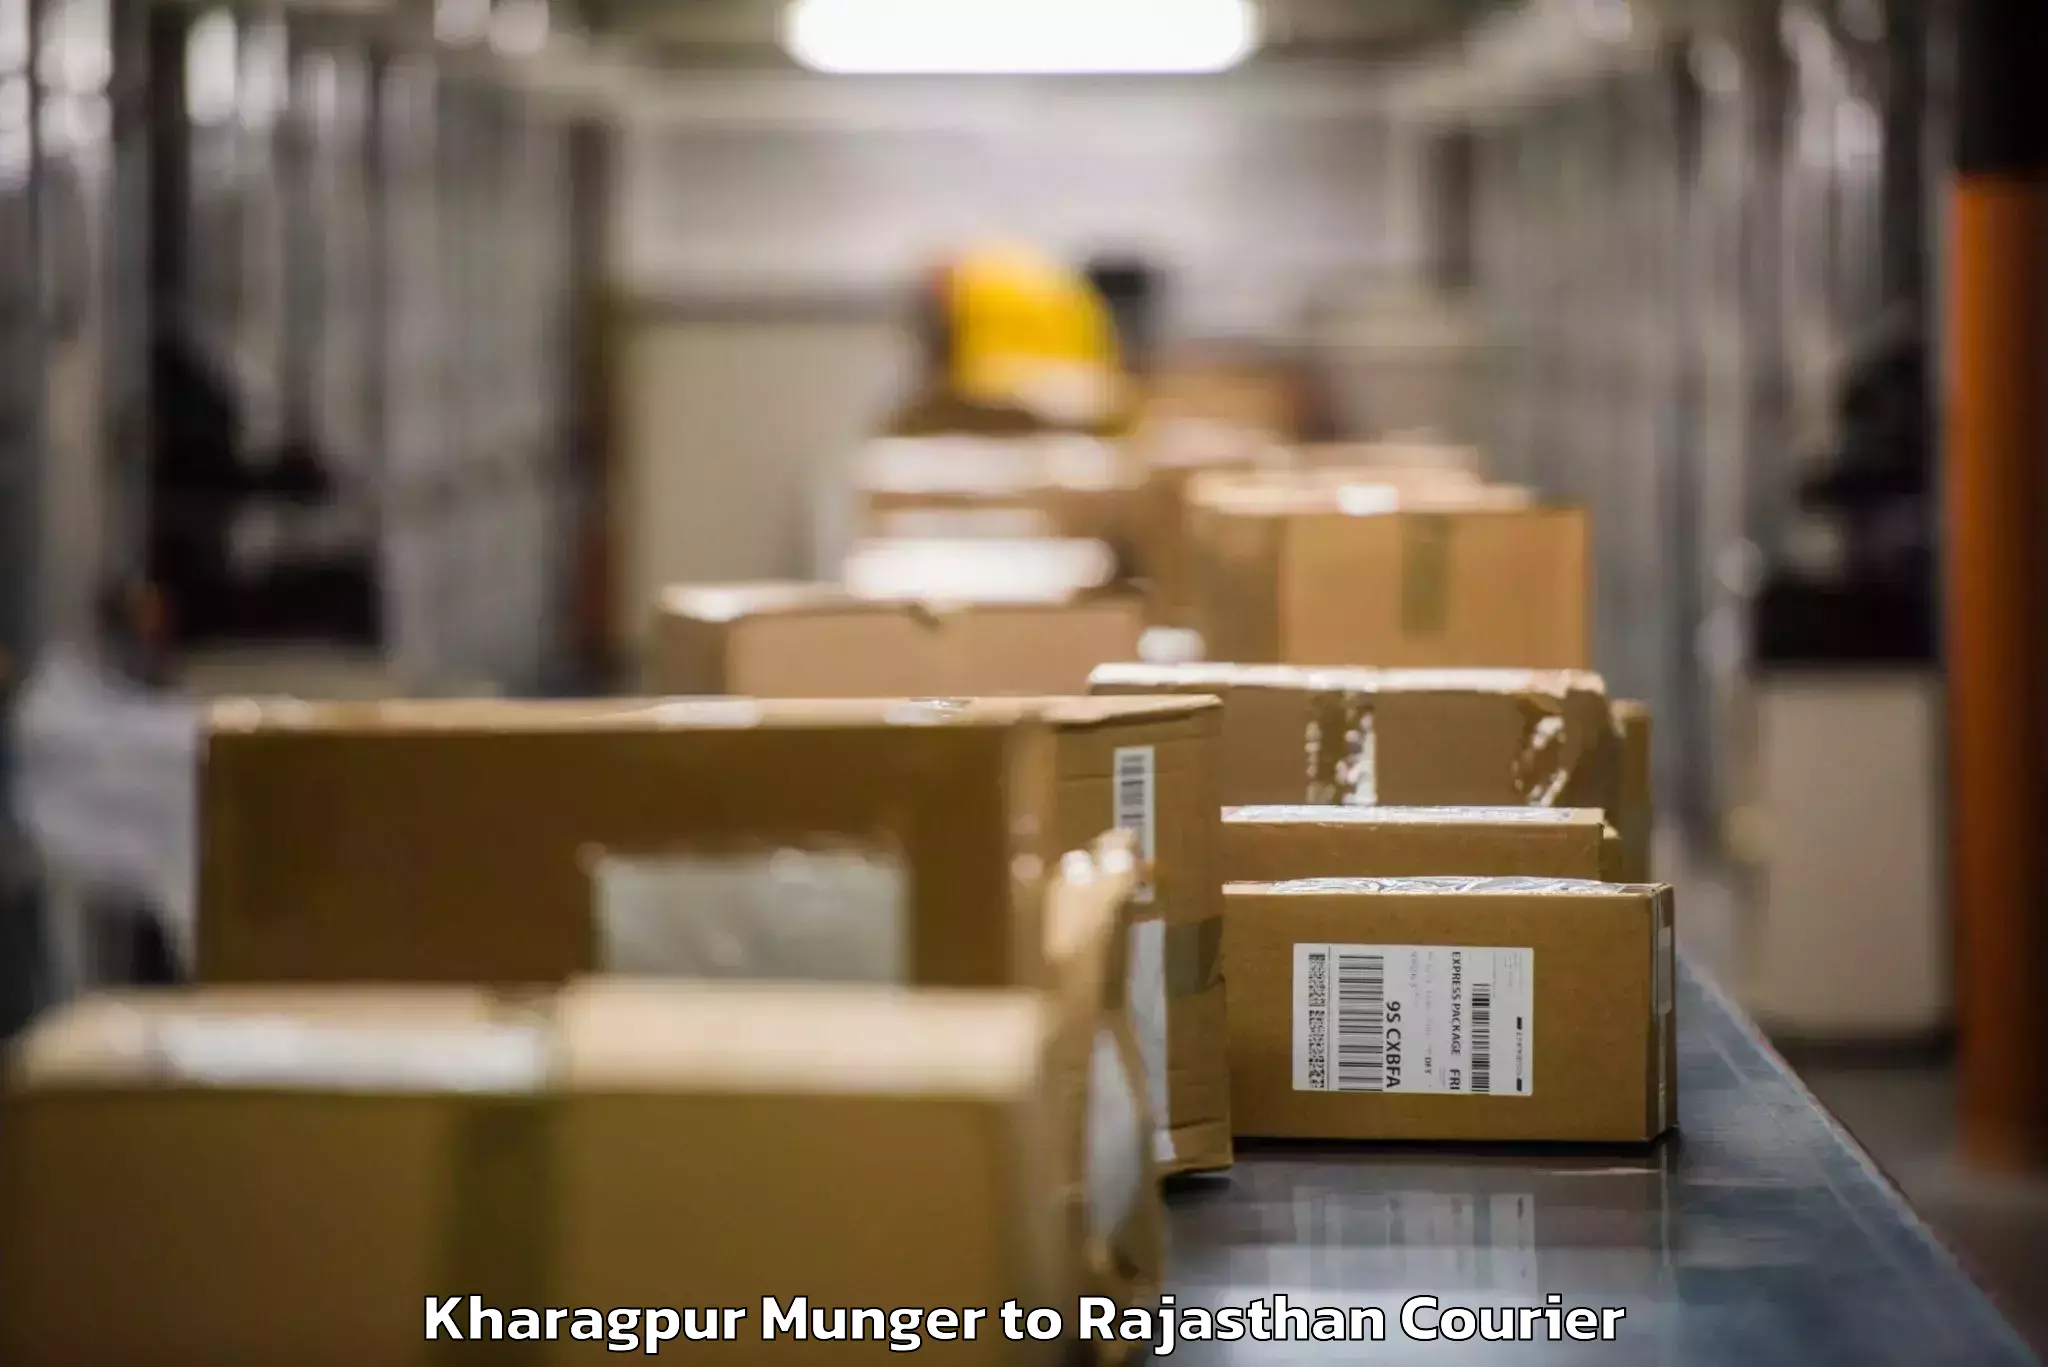 Baggage transport management Kharagpur Munger to Kaman